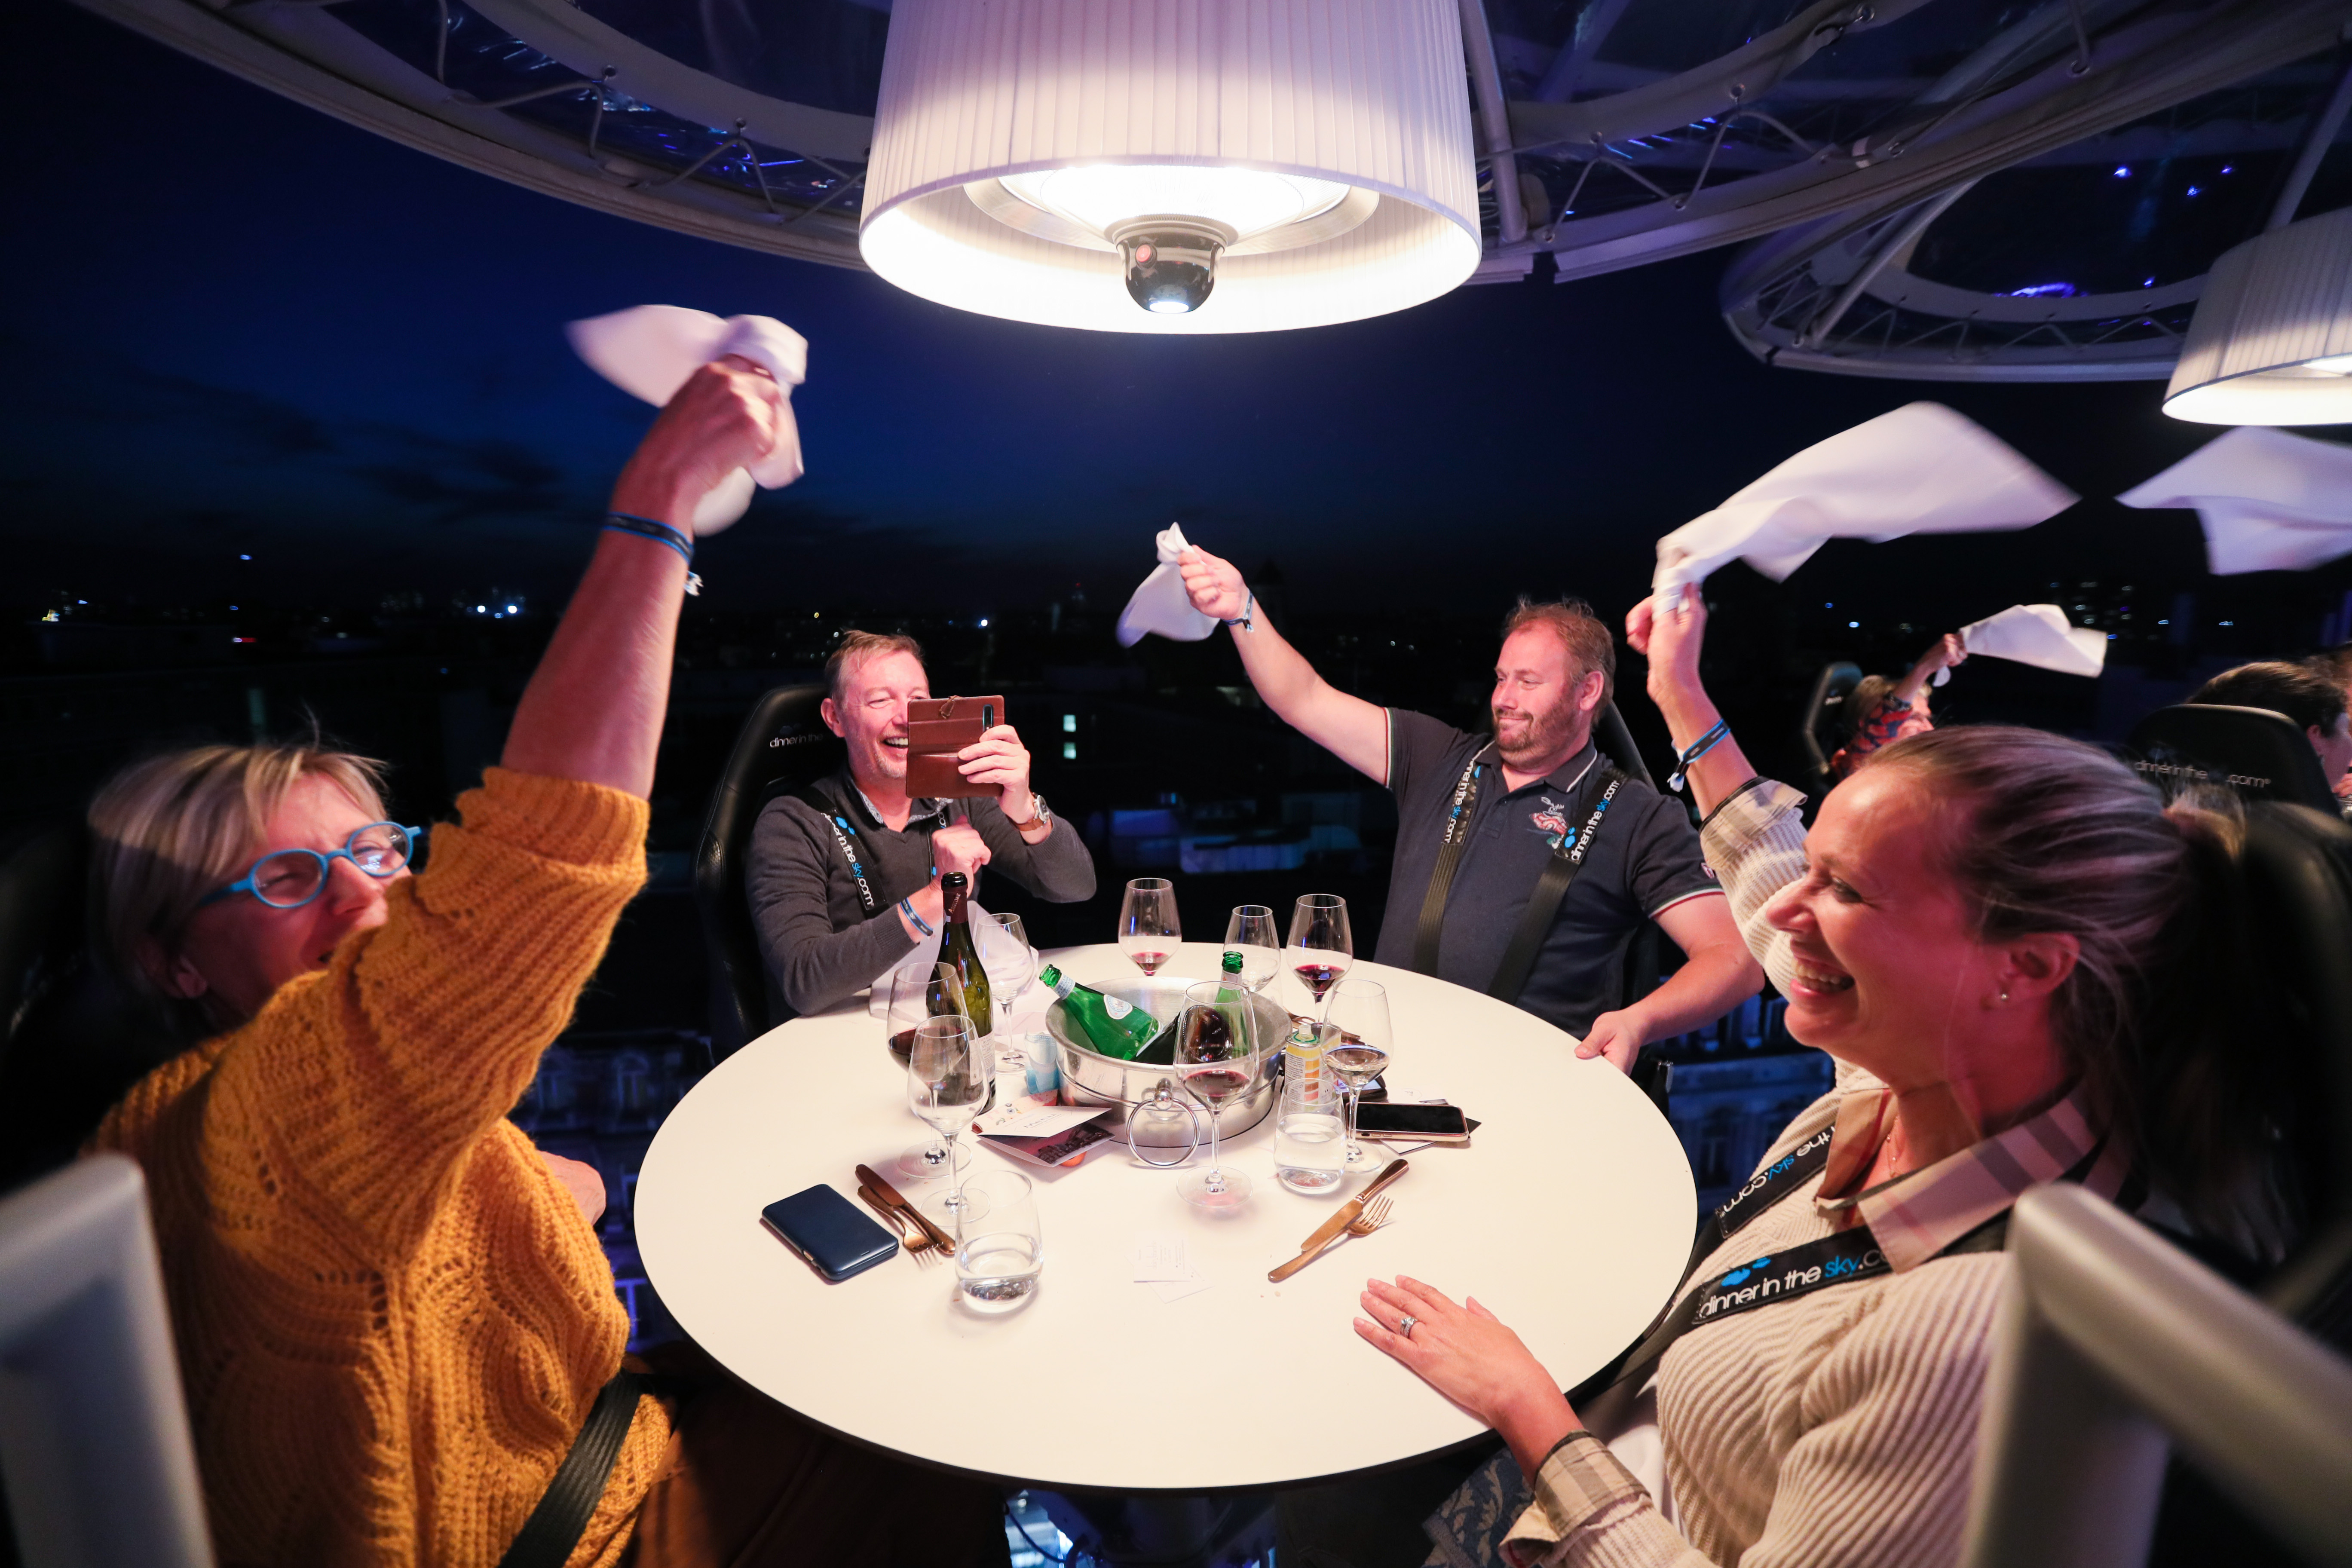 9月18日，食客在比利時首都布魯塞爾體驗「空中餐廳」。 近日，「空中餐廳」在比利時首都布魯塞爾市中心營業。 「空中餐廳」概念於2006年起源於比利時，迄今已在許多國家和地區鋪設過餐桌。今年的布魯塞爾「空中餐廳」最高可升至約50米，設有8個獨立餐桌，可在遵守「社交距離」的規則下容納32名食客，每人就餐需要花費295歐元（約合2369元人民幣）。 （新華社記者 鄭煥松 攝）